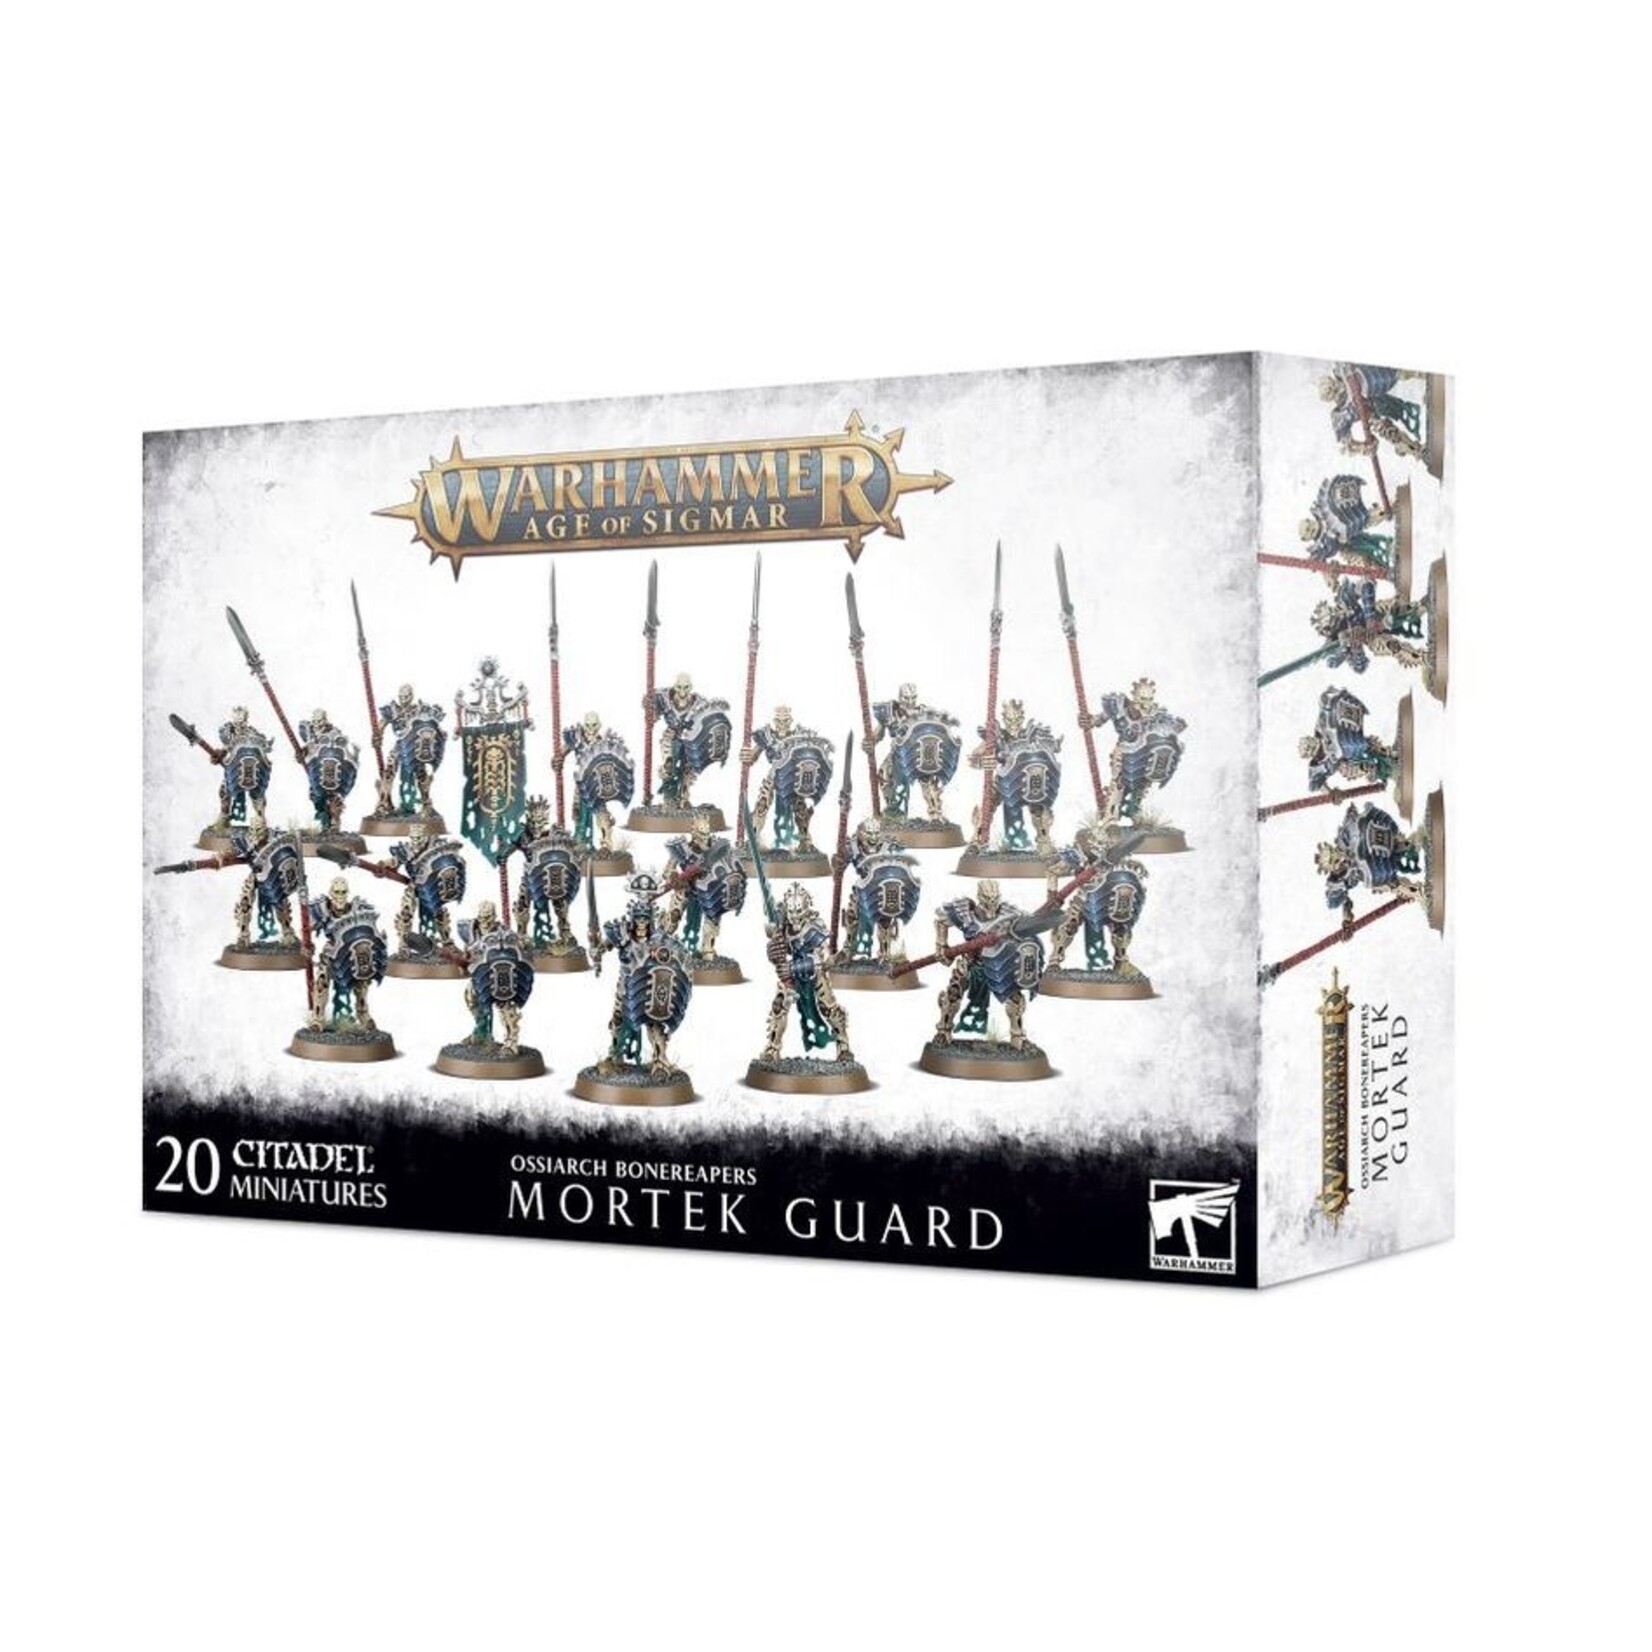 Warhammer Ossiarch Bonereapers – Mortek Guard